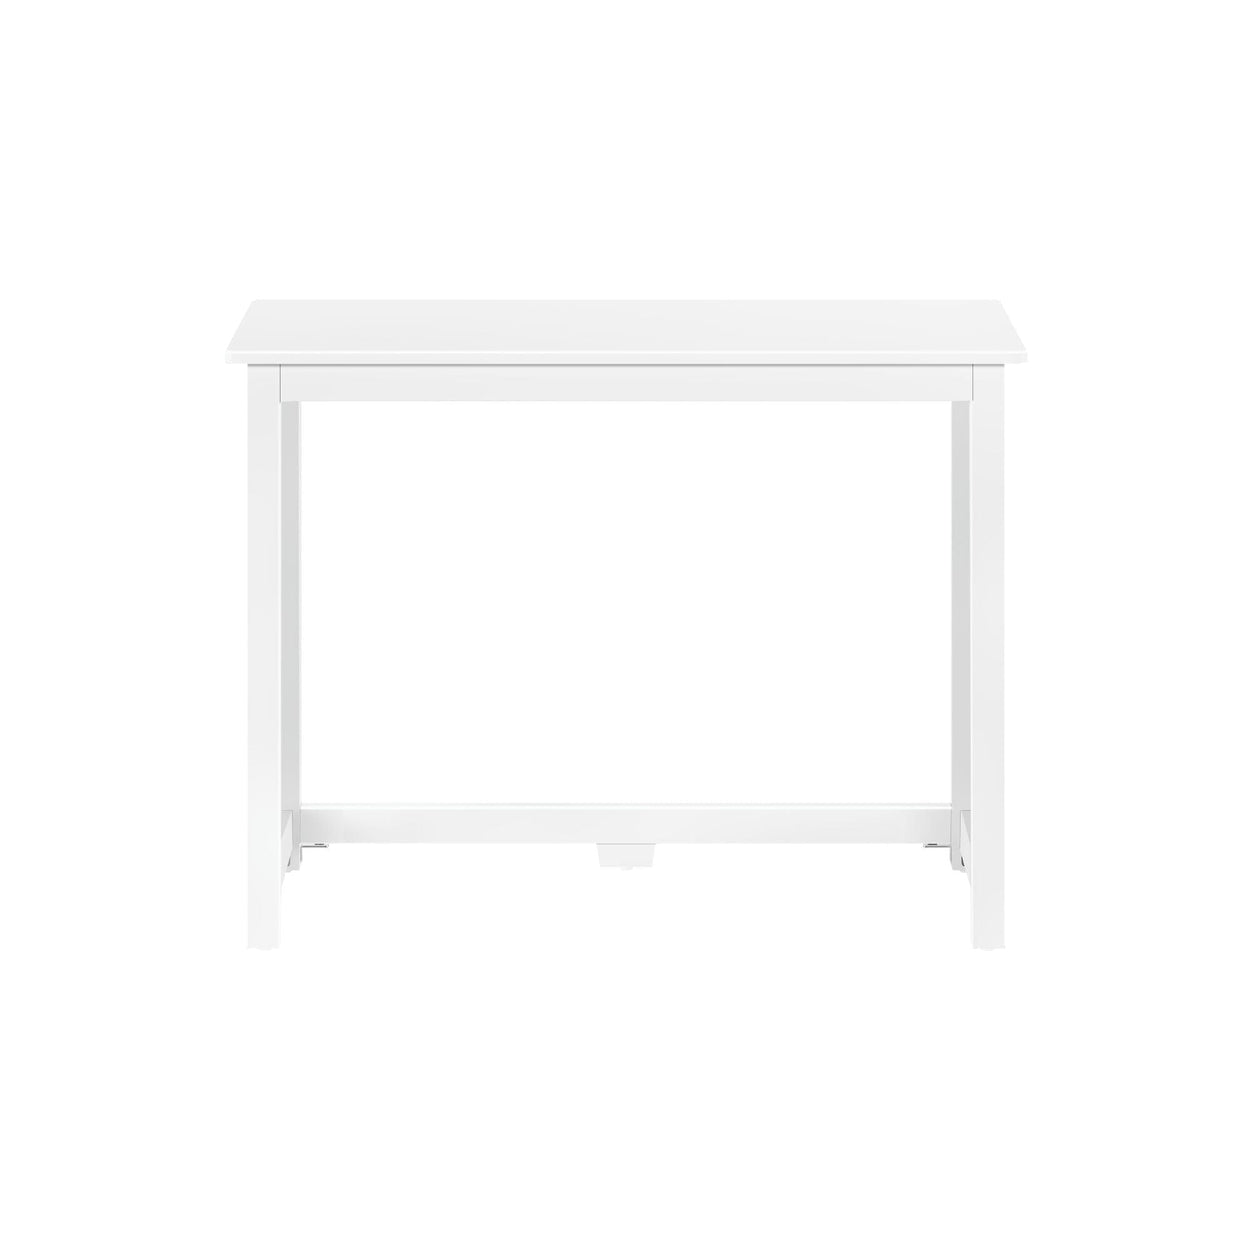 181000-002 : Furniture Simple Desk - 40 inches, White